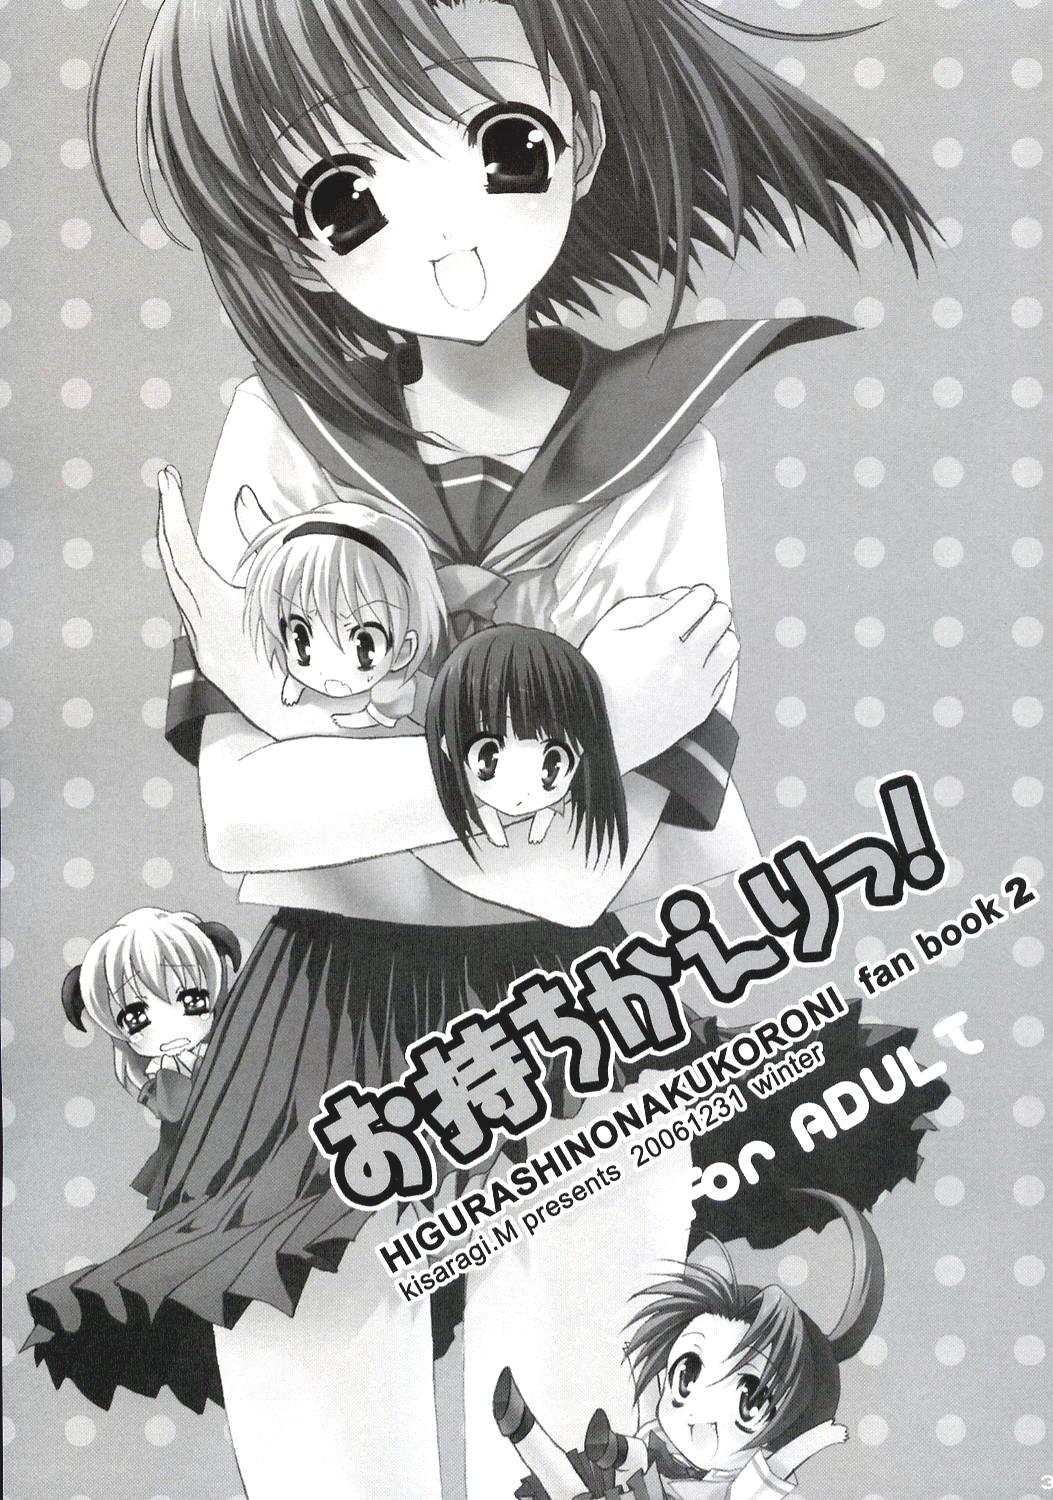 Doublepenetration Omochikaeri! - Higurashi no naku koro ni Girlsfucking - Page 2